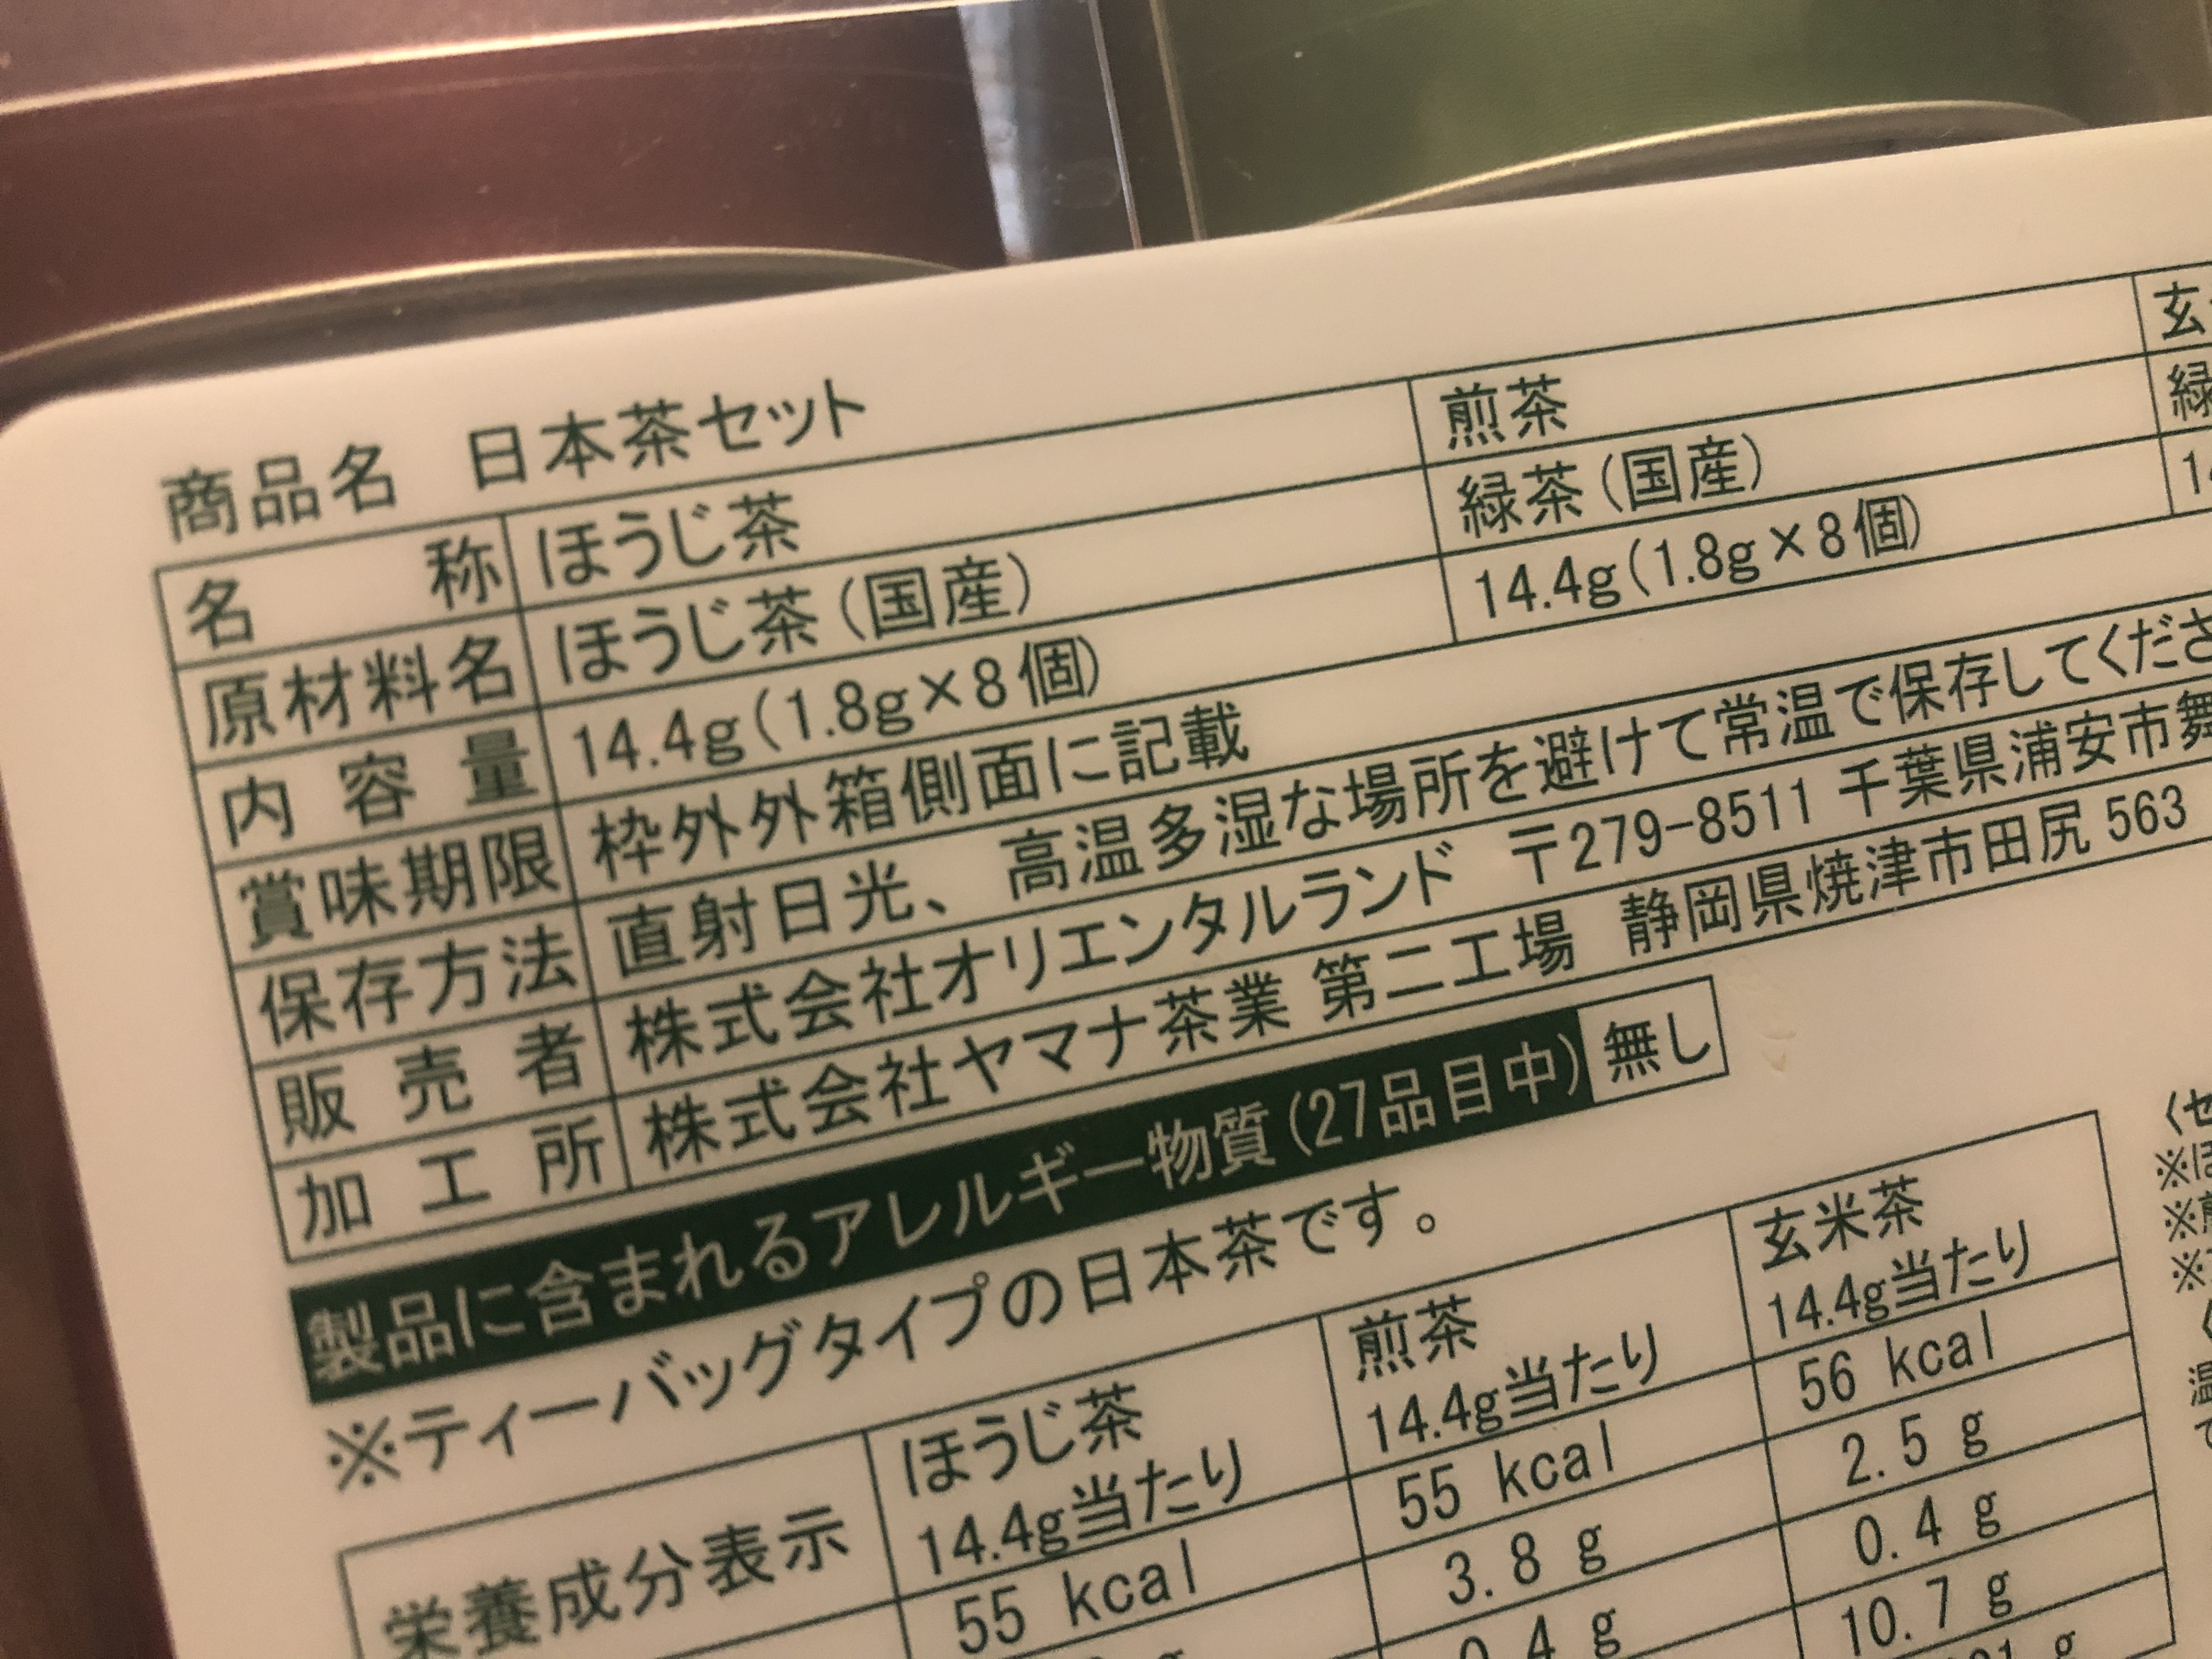 Onoken ニューアルバム Felys Artcore Collection発売 そいや先日ディズニー のお茶セットを買ったんだけど ひと袋55キロカロリーもある 特に砂糖とか入っている訳でもないのに その辺のクッキーよりハイカロリー 調べてみたら 茶葉をそのまま食べた